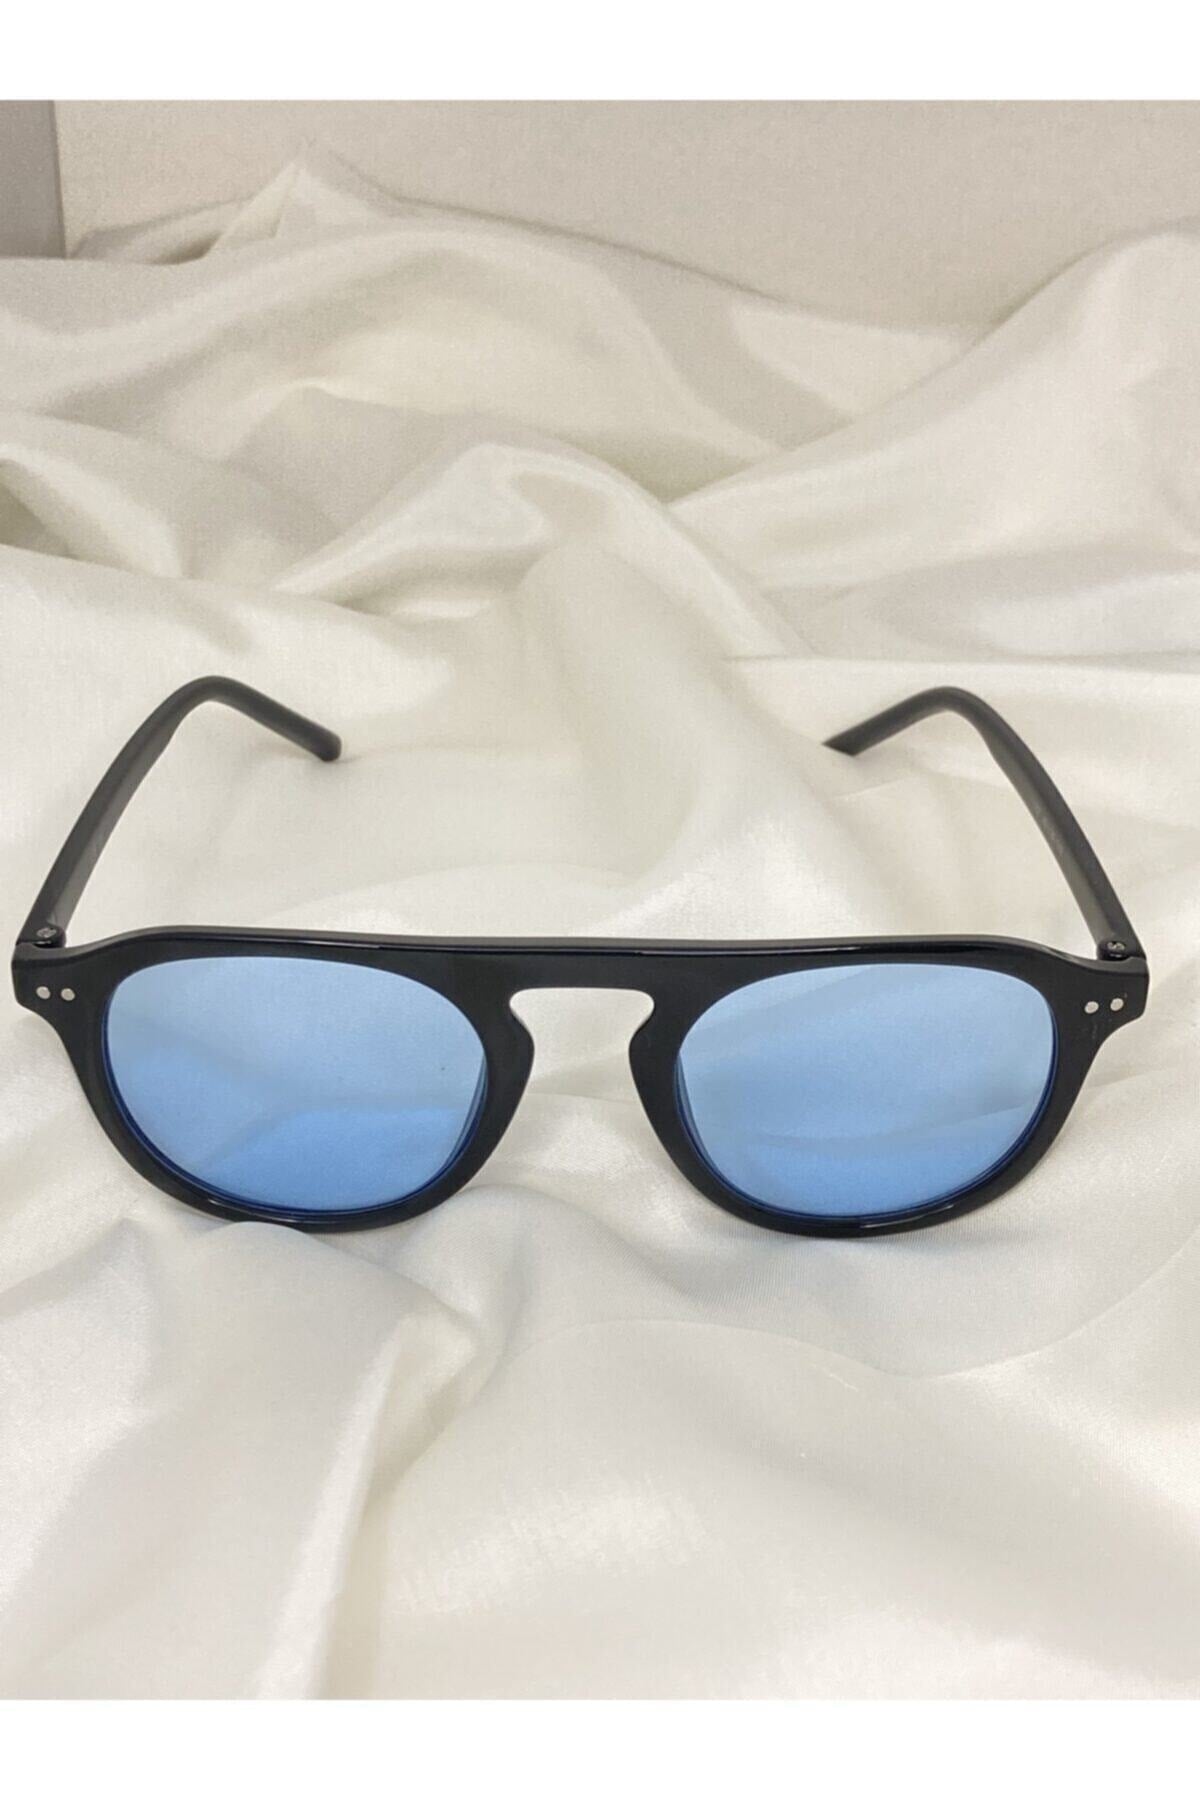 Unisex Vintage Style Sunglasses